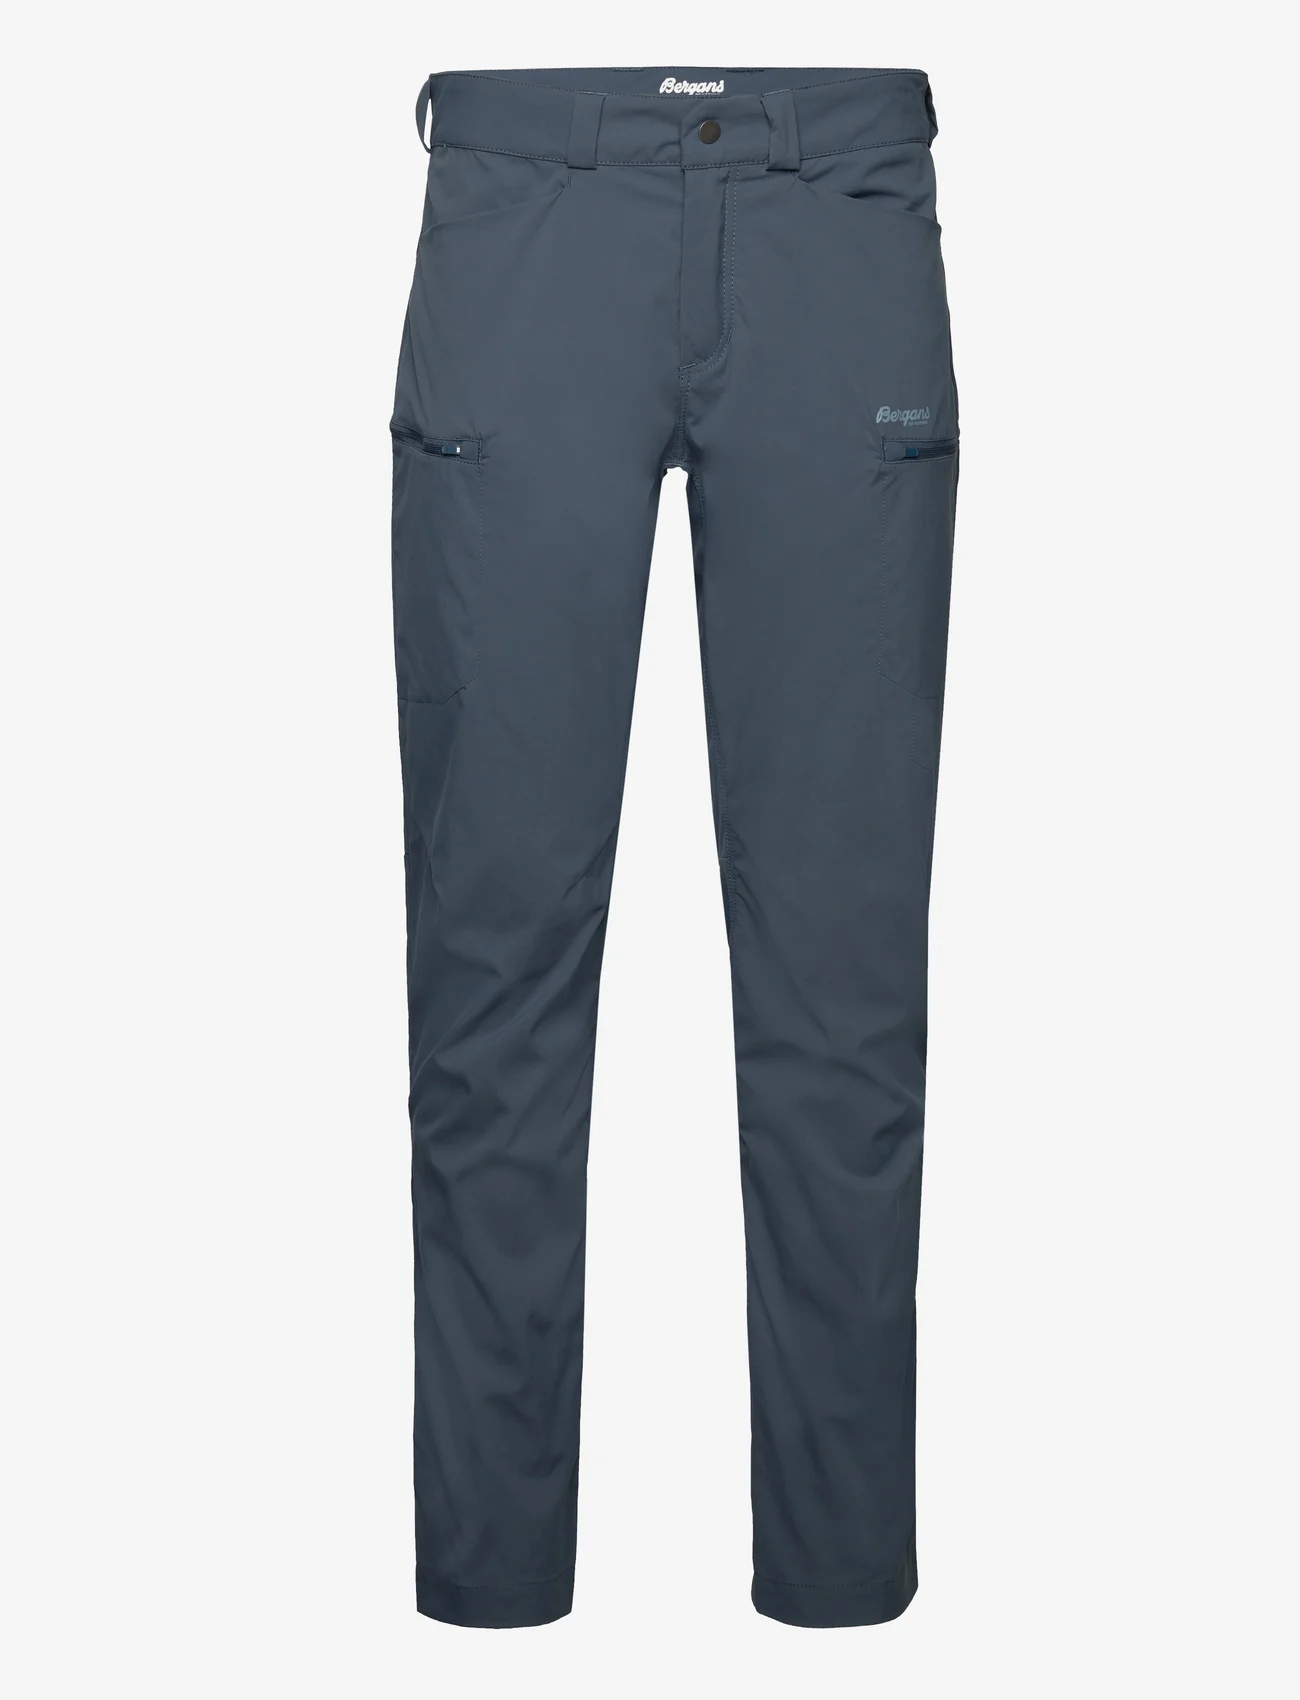 Bergans - Utne V5 Pants - spodnie turystyczne - orion blue - 0